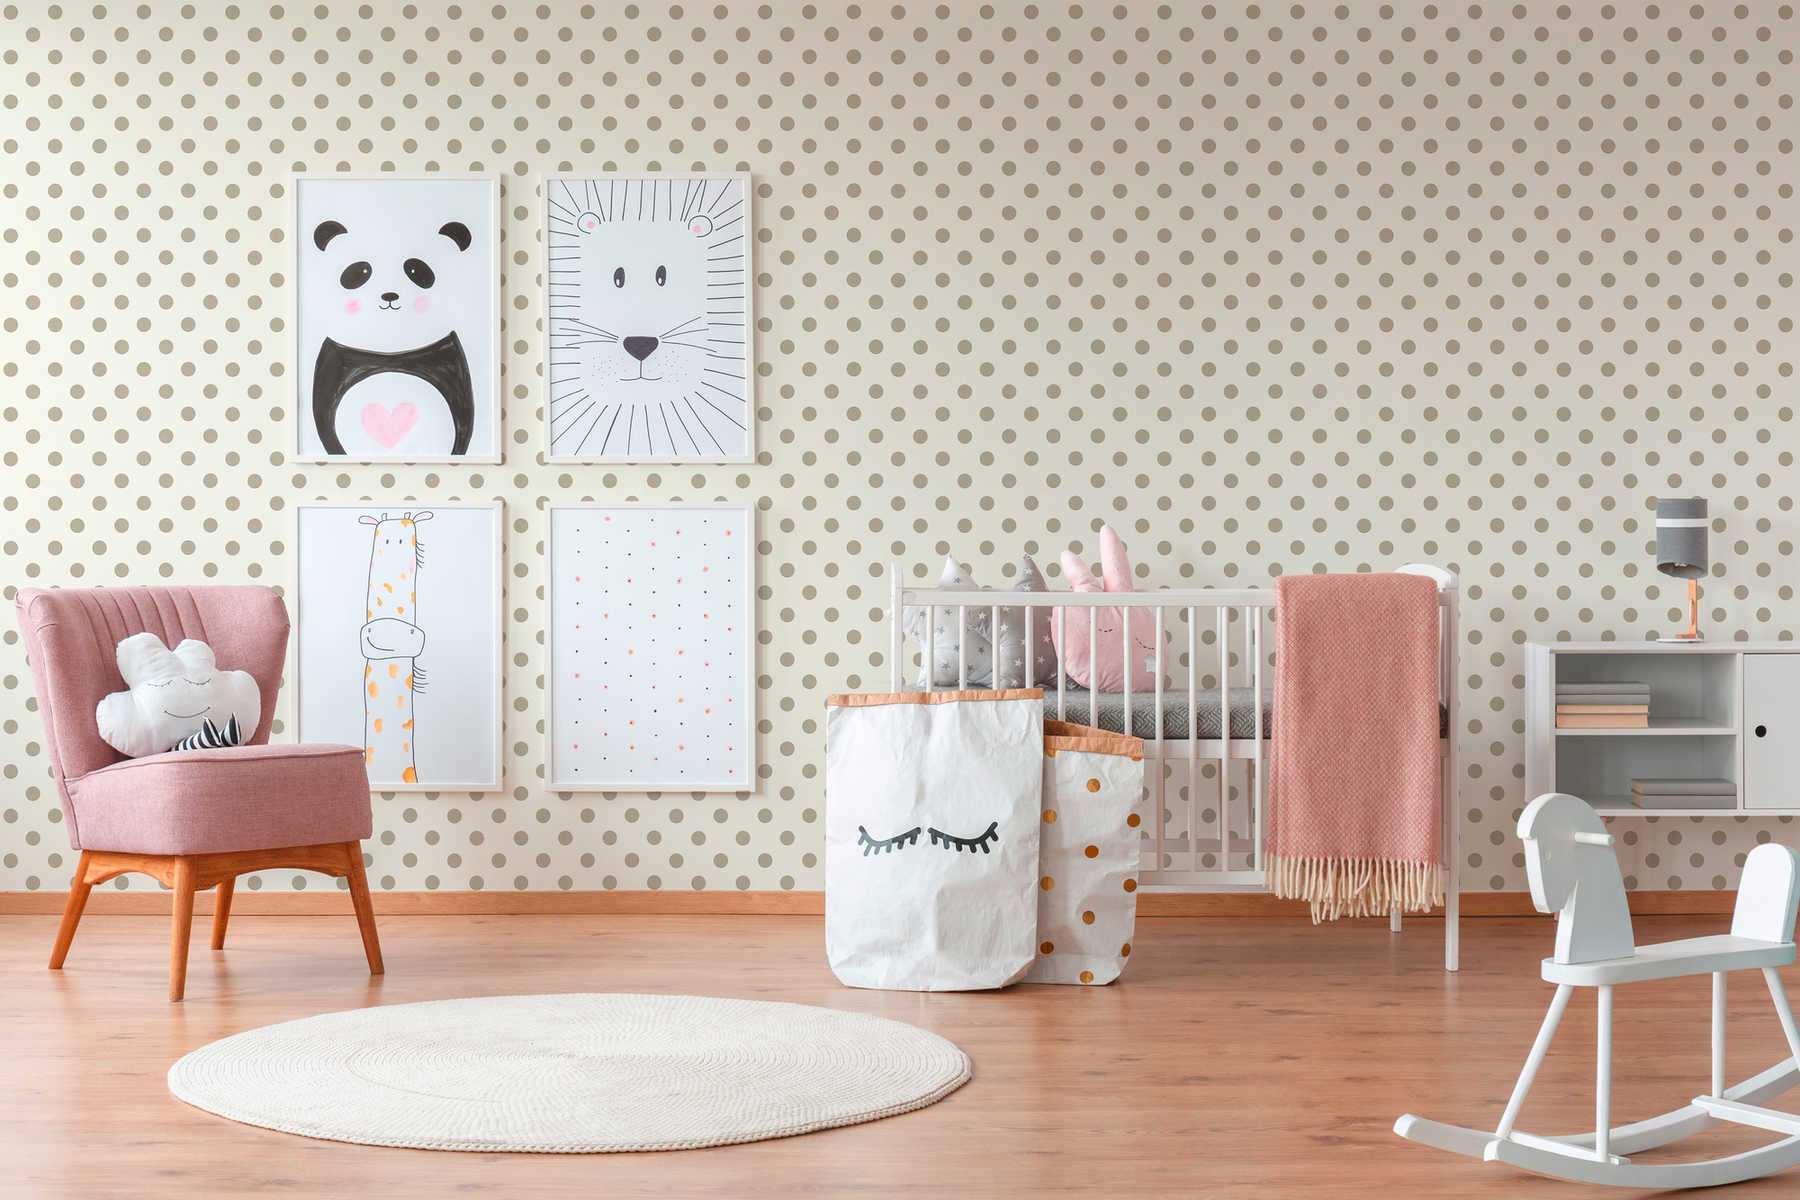             Vliestapete Punkte, Polka Dots Design für Kinderzimmer – Beige, Taupe
        